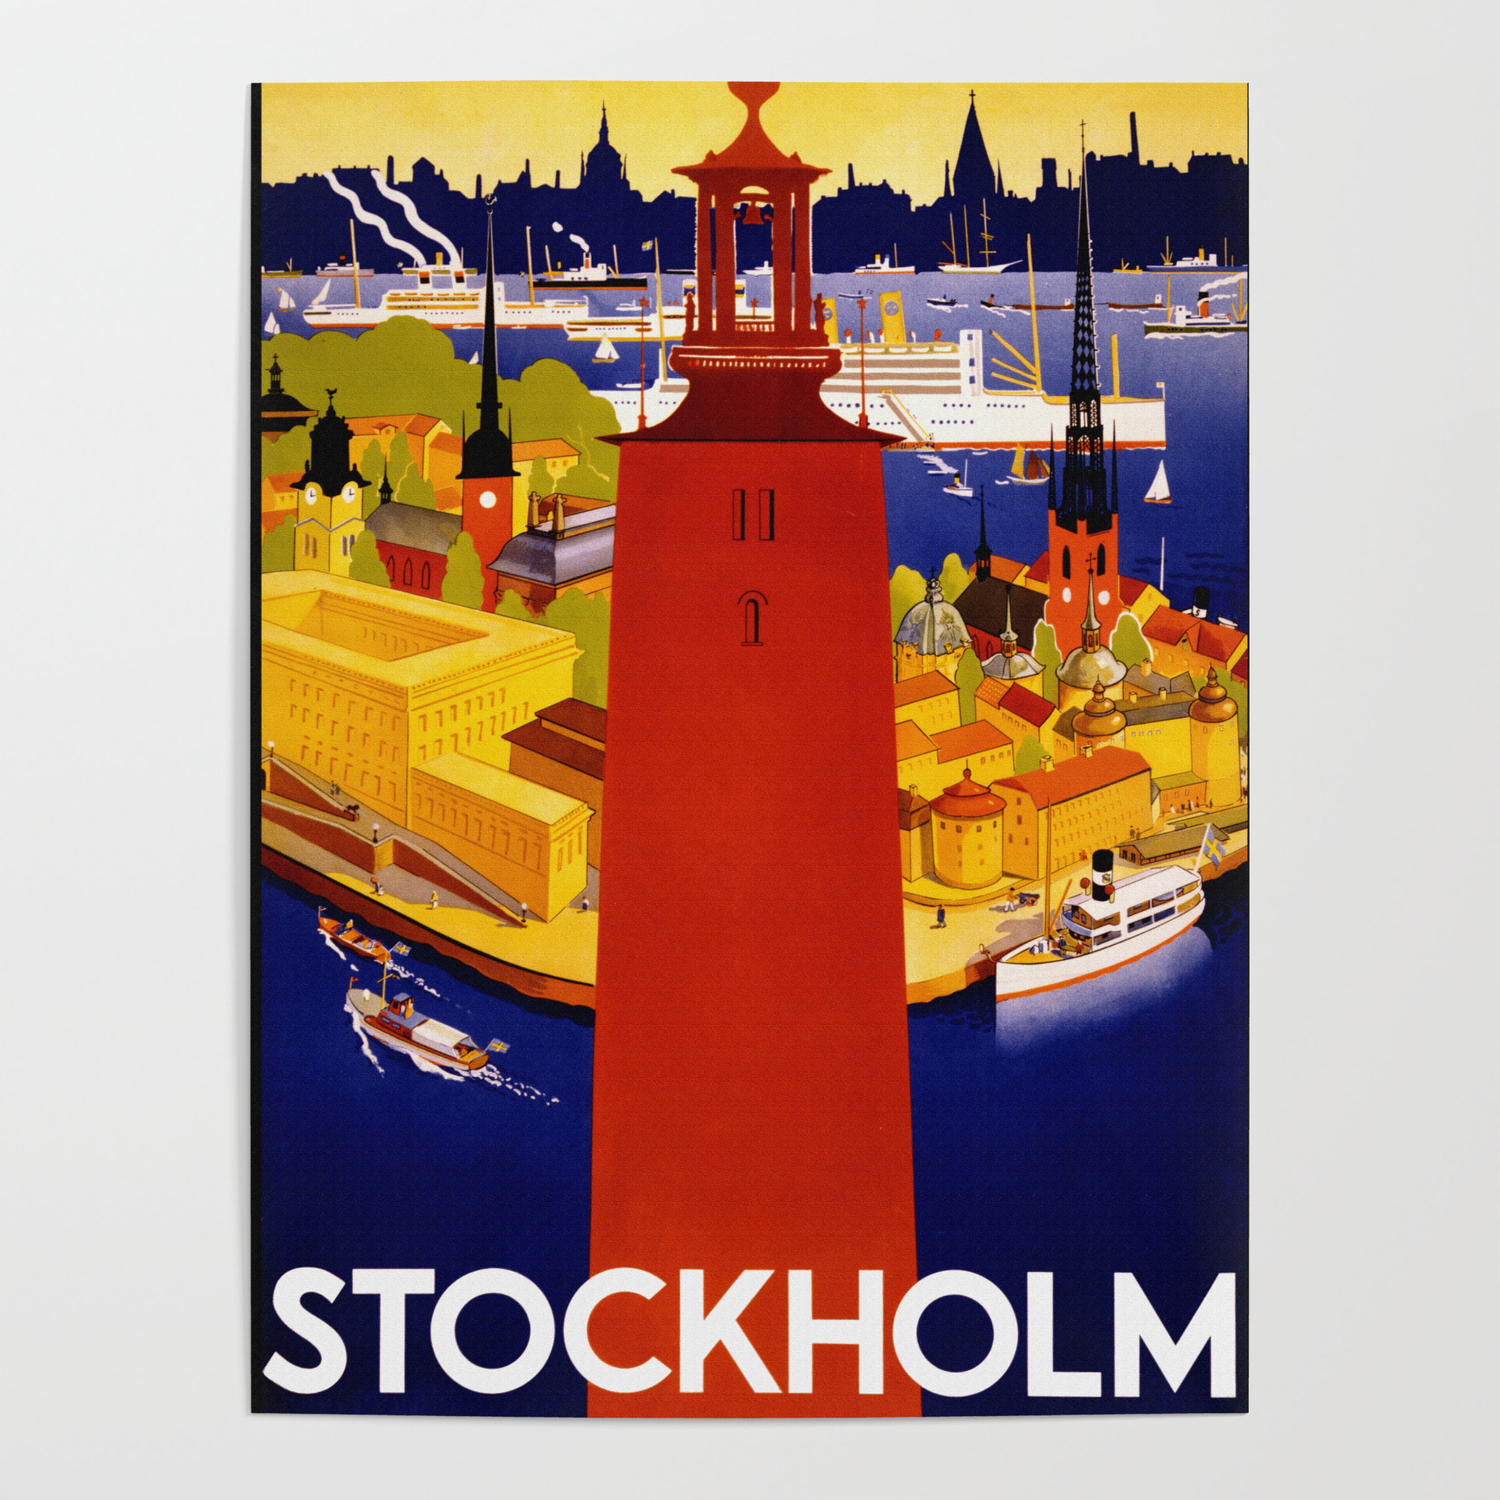 Sweden Swedish Stockholm Scandinavia Vintage Travel Poster Art Advertisement 